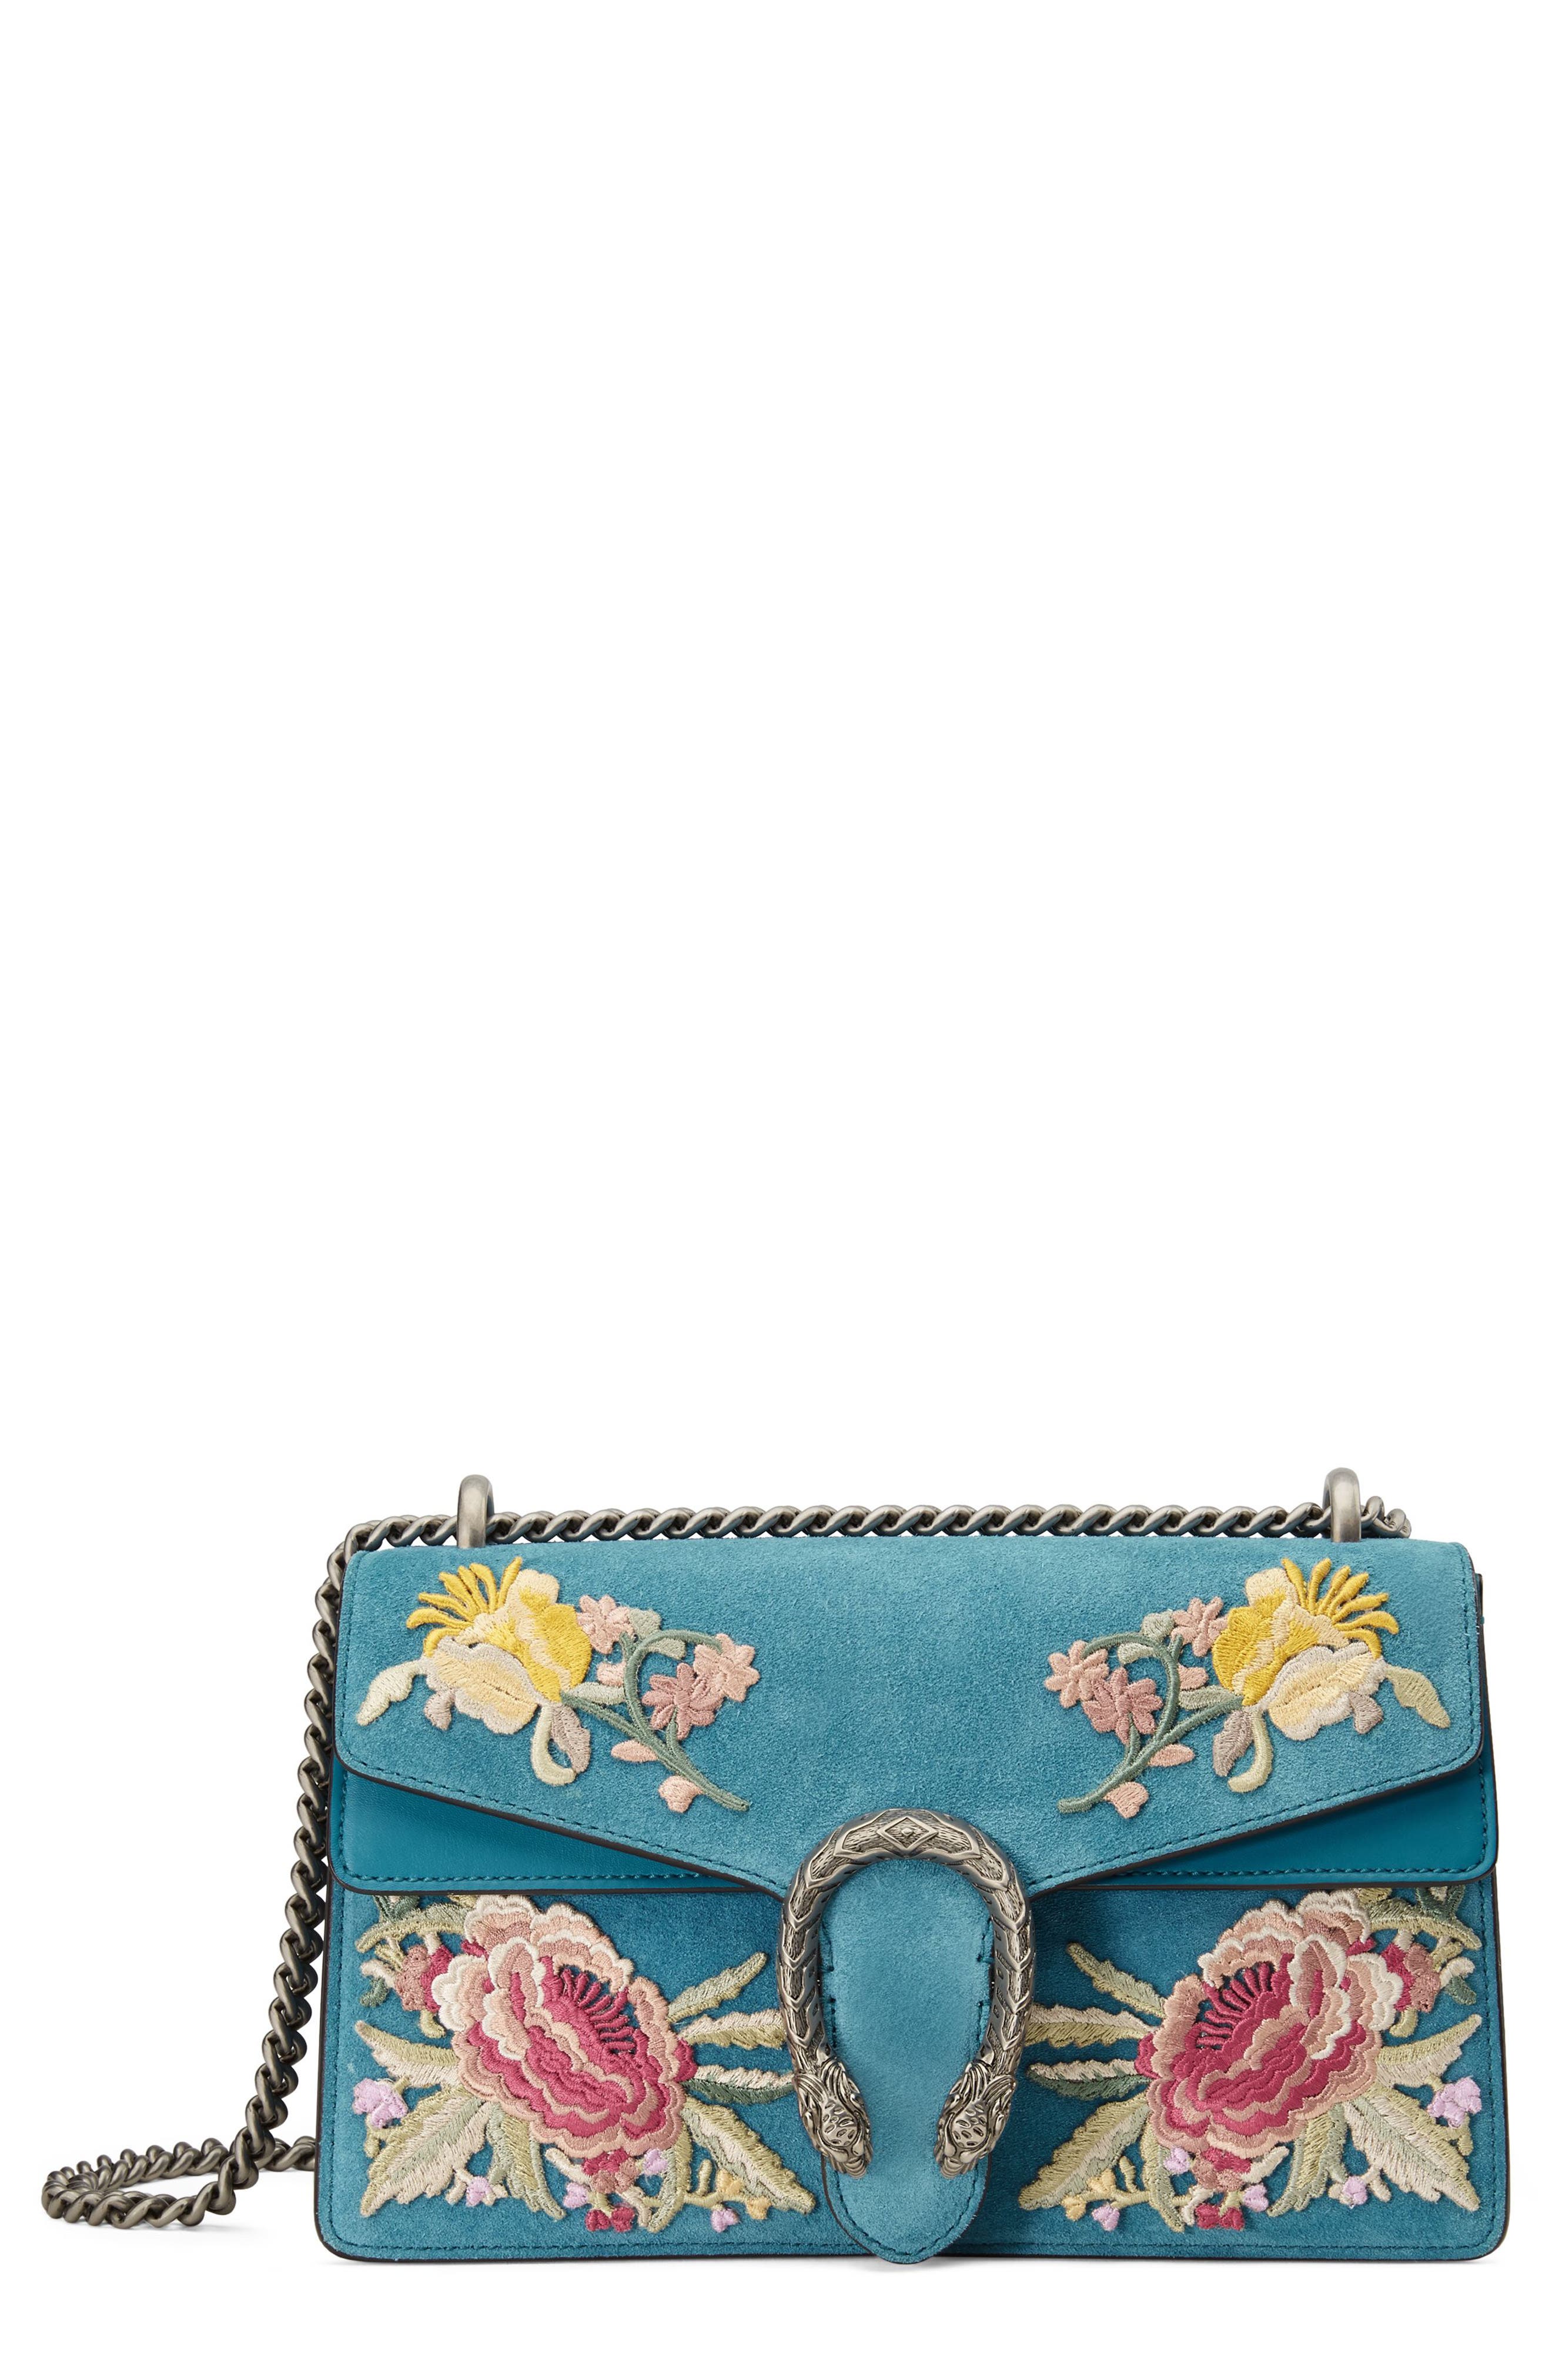 gucci embroidered purse